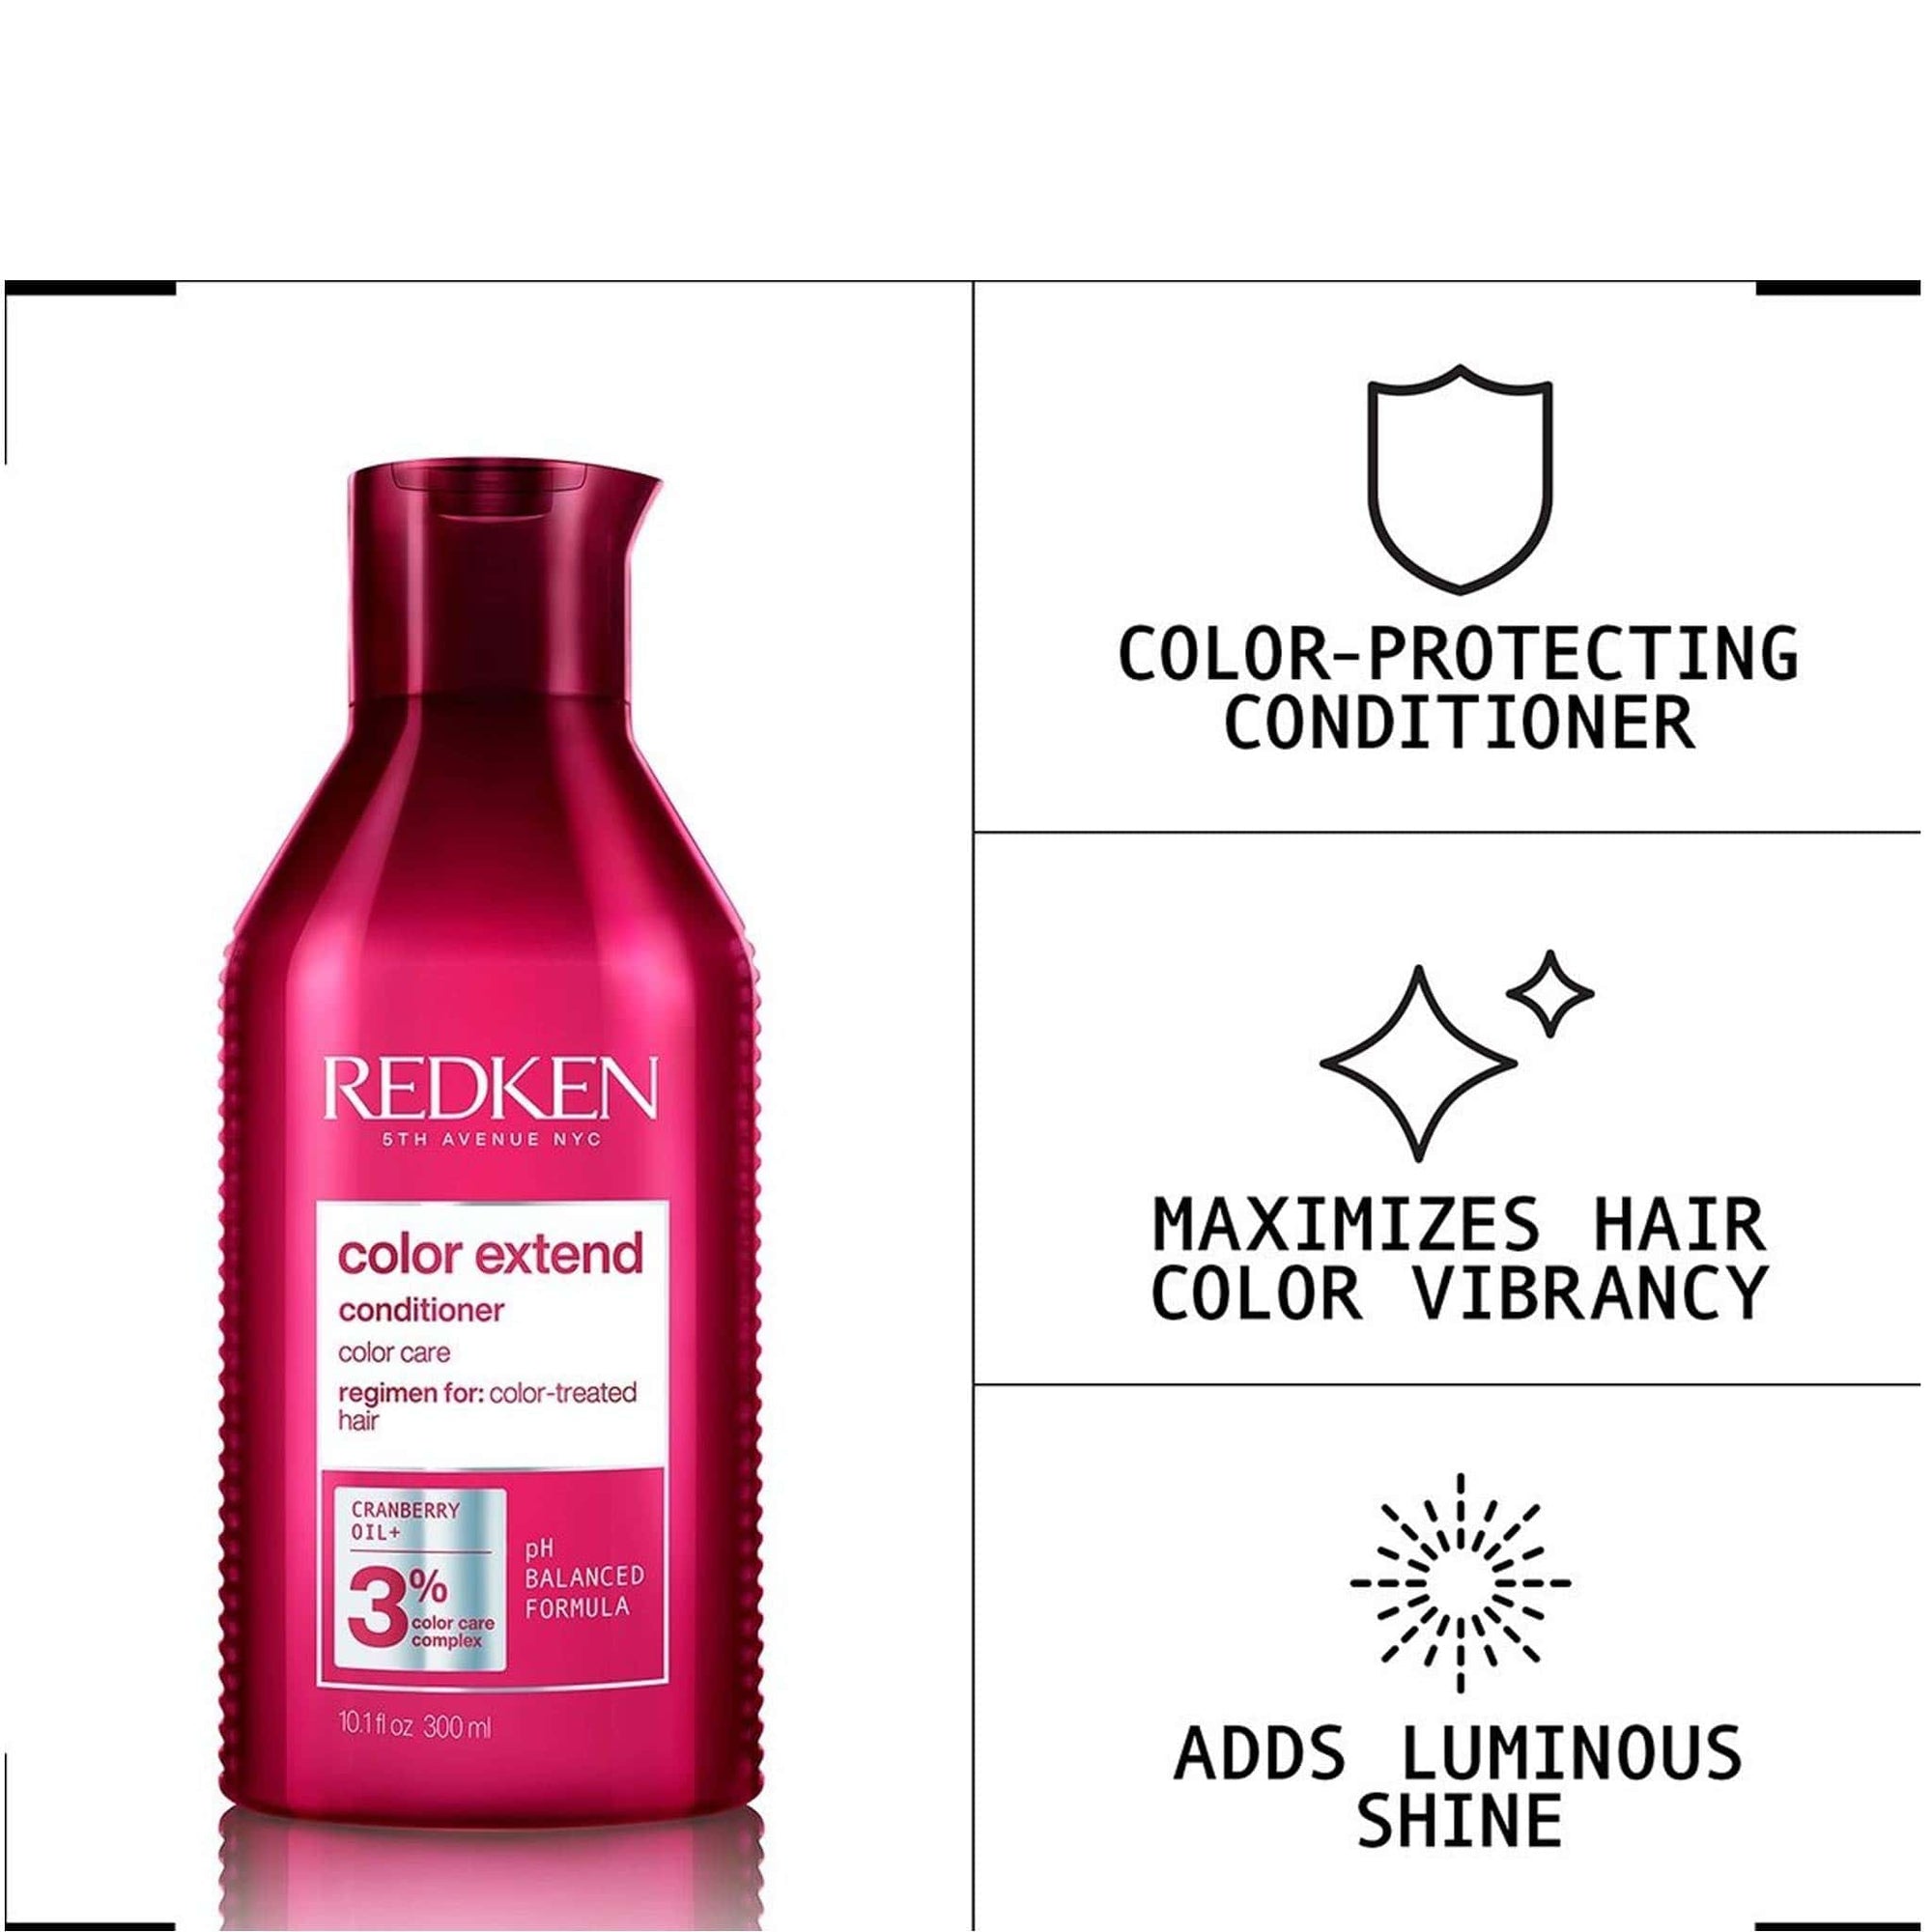 Redken Color Extend Conditioner 300ml - Shop online | Retail Box